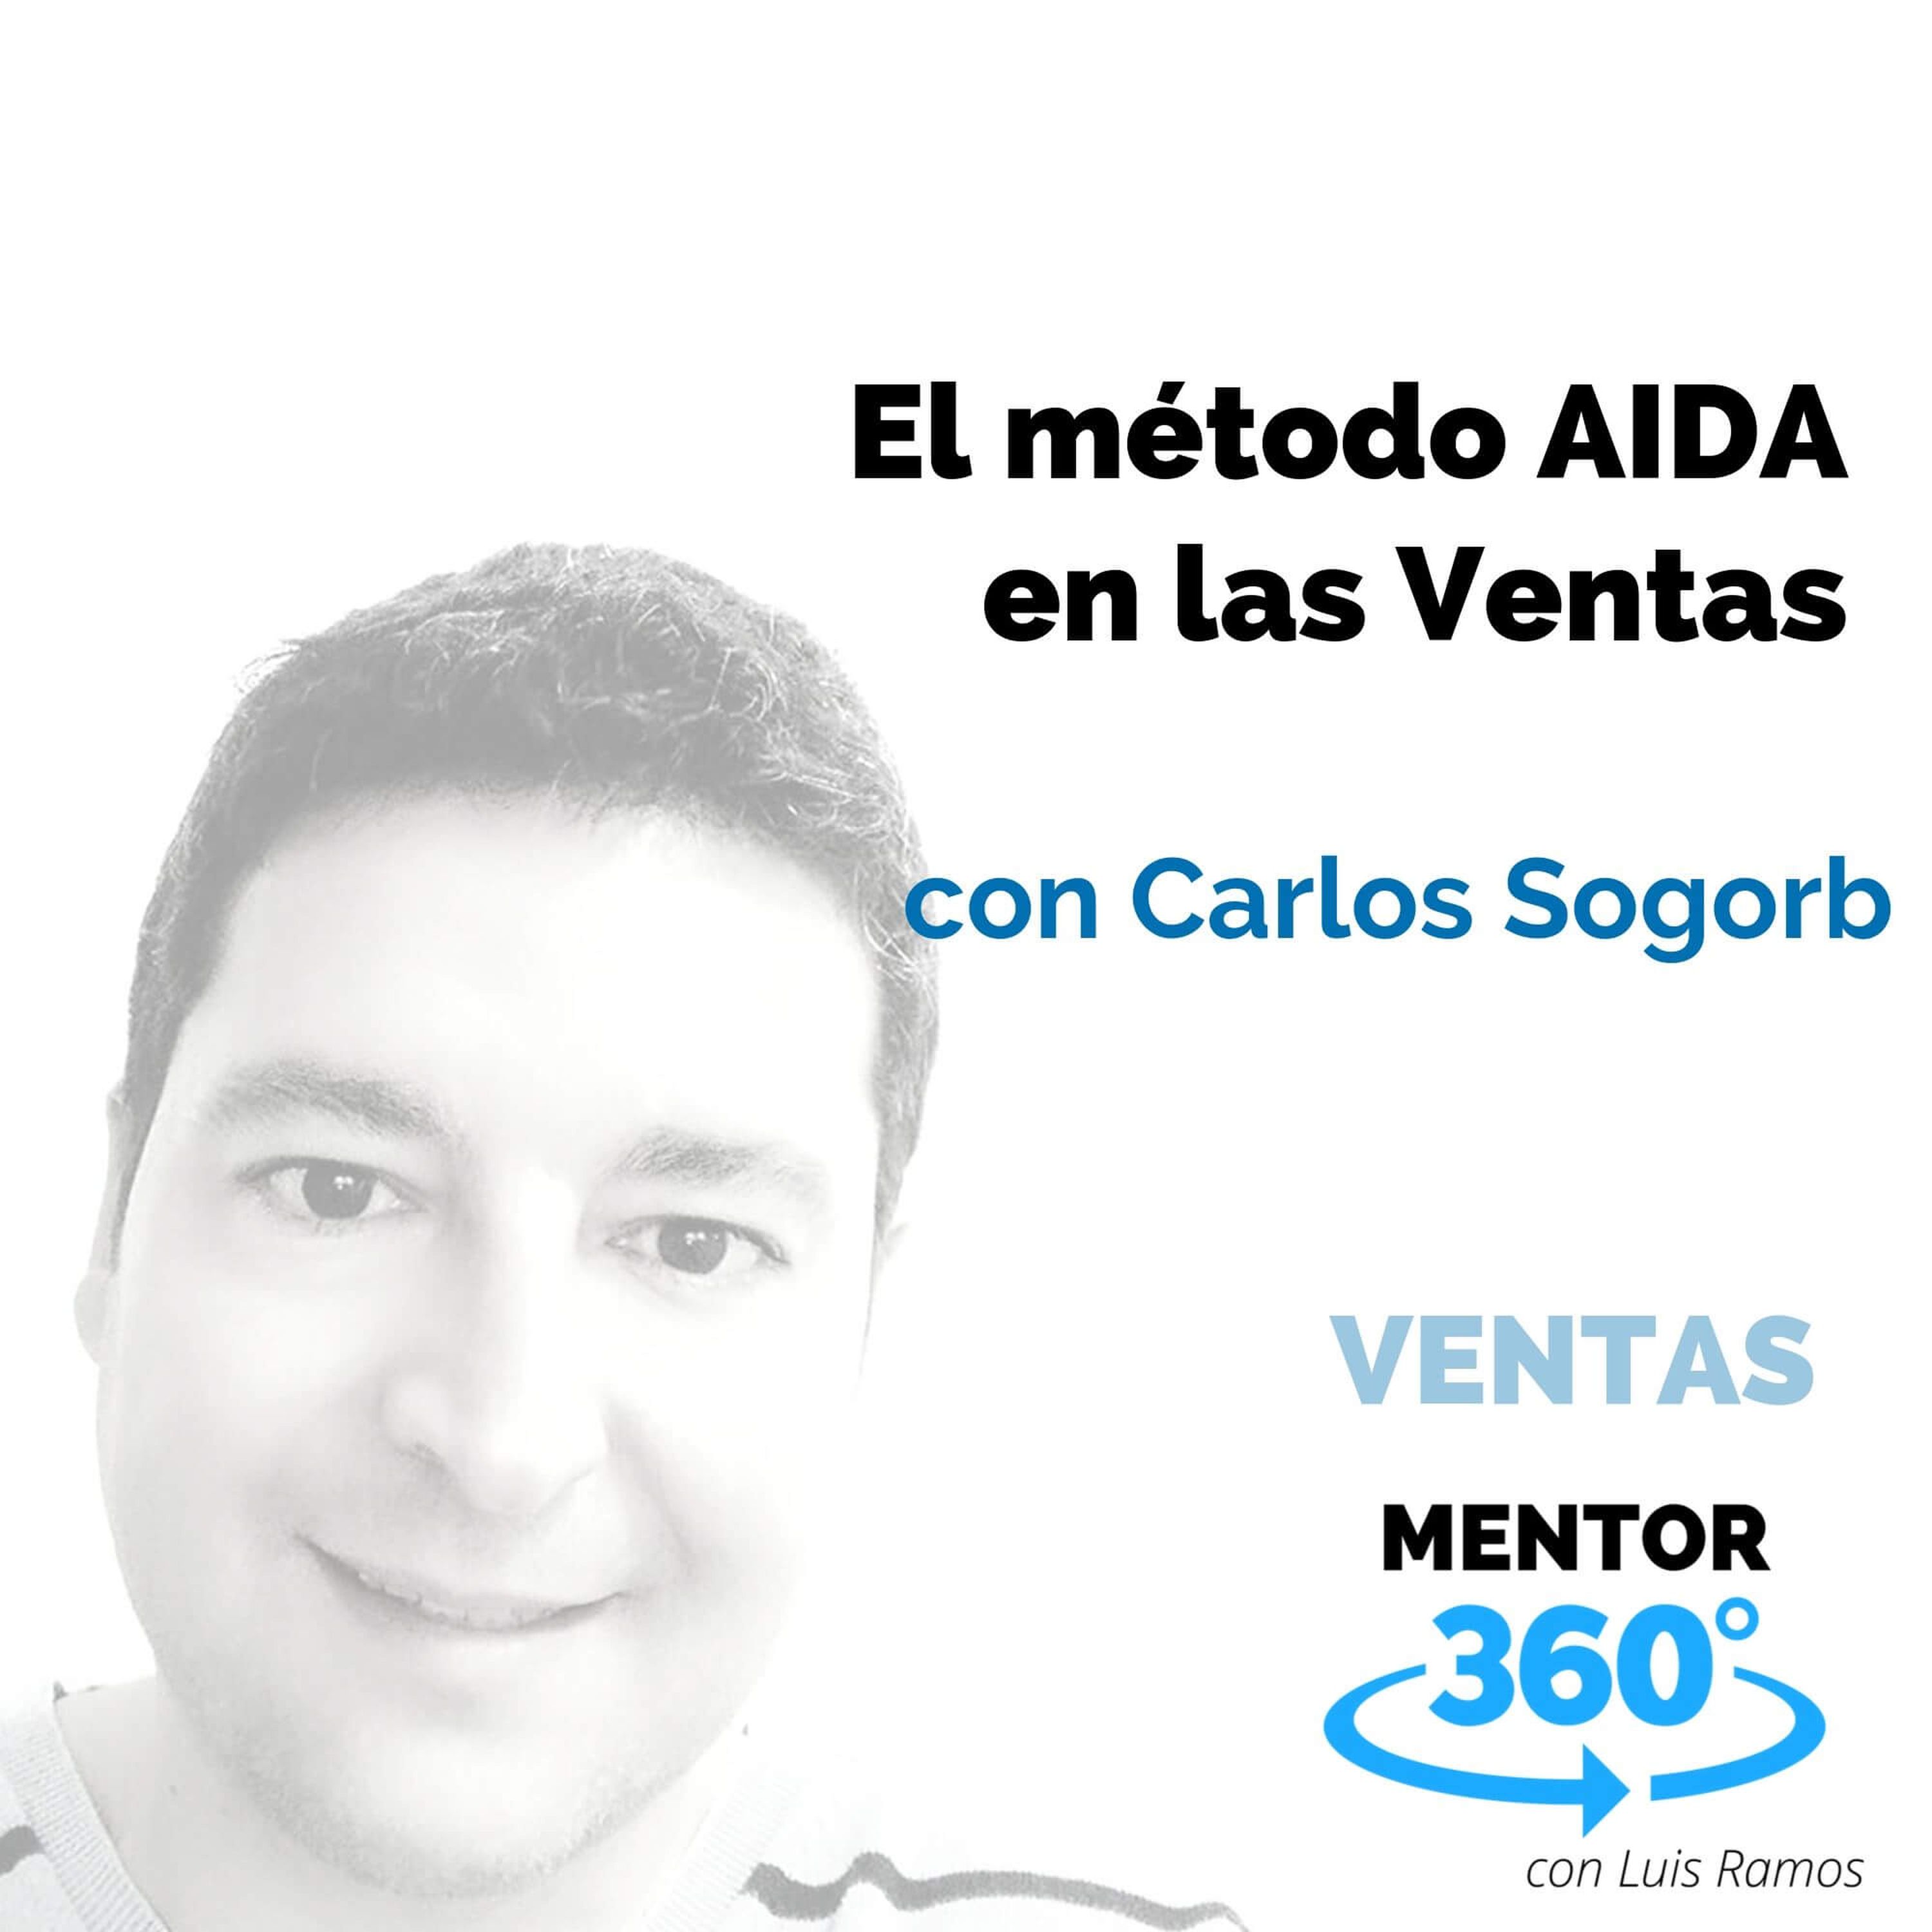 El método AIDA en las Ventas, con Carlos Sogorb - VENTAS